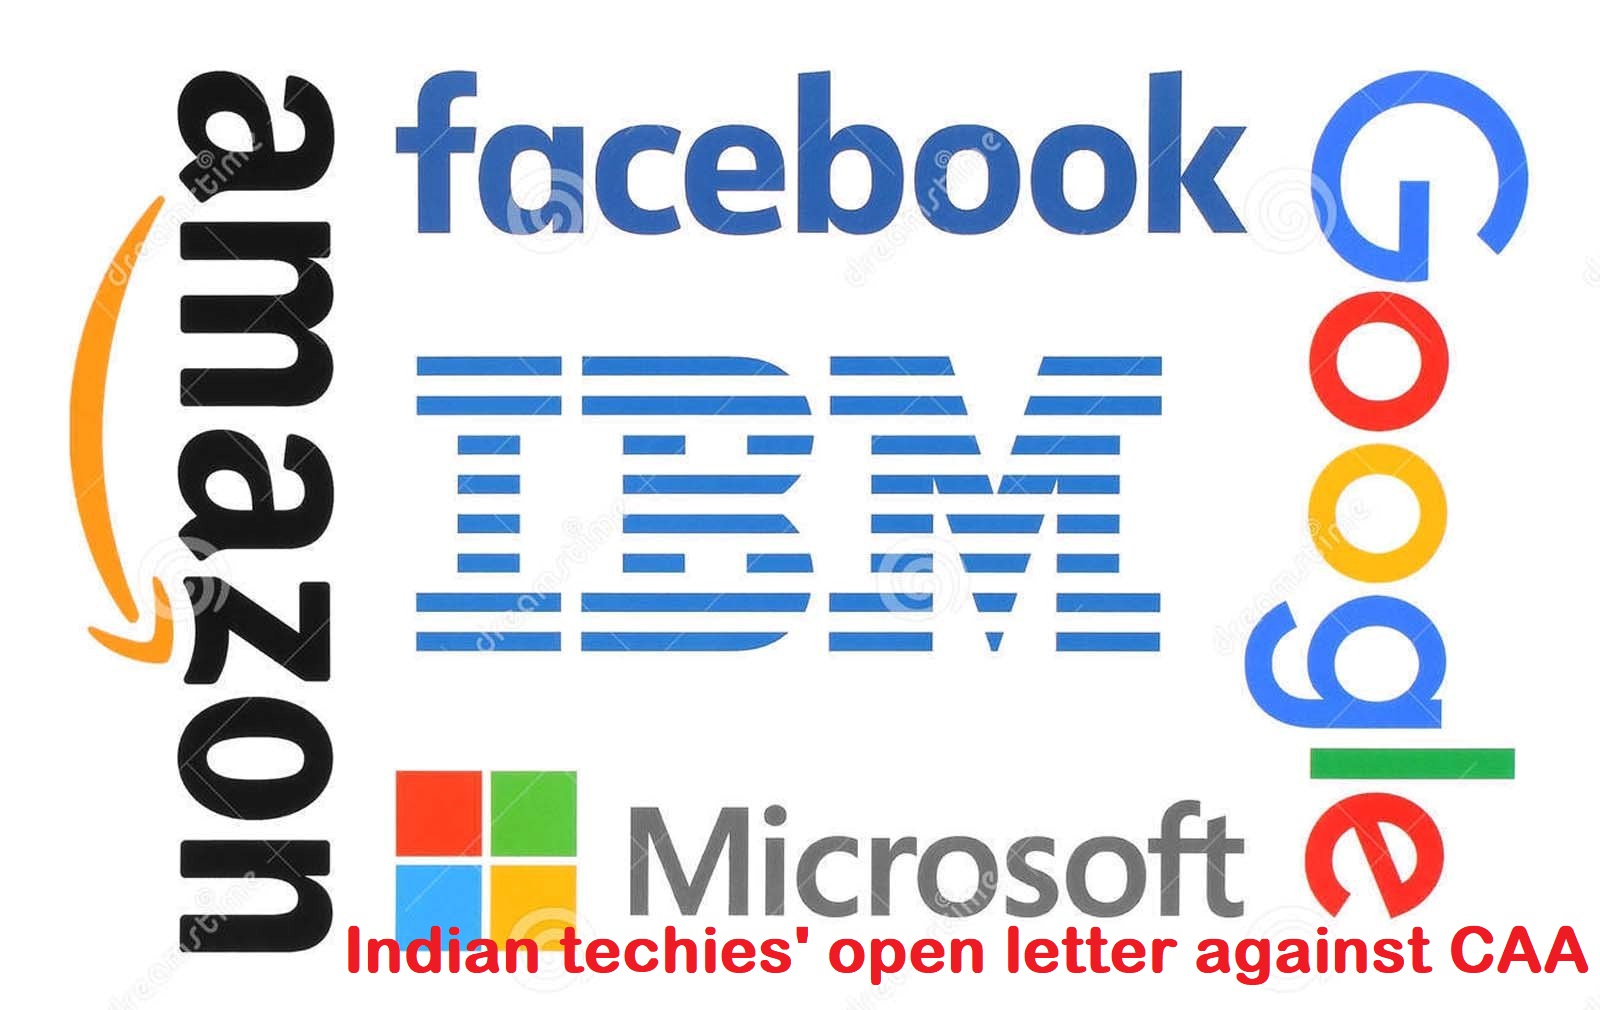  फेसबुक,गूगल,माइक्रोसॉफ्ट,अमेज़न,उबर के भारतीय तकनीकी विशेषज्ञों ने CAA के खिलाफ खुला खत लिखा।